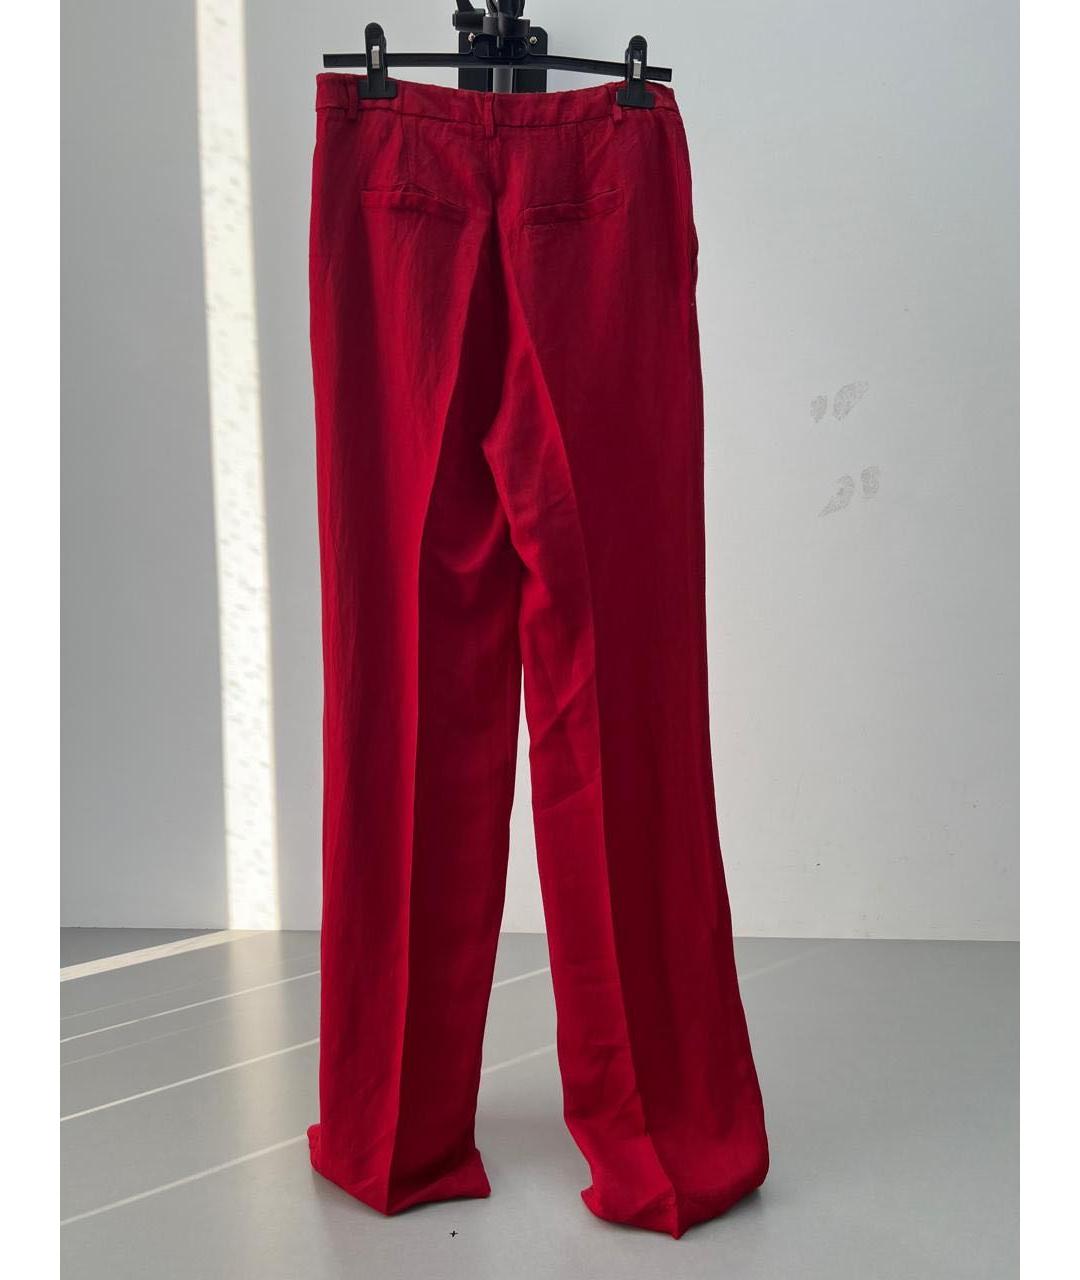 TWIN-SET Красные льняные брюки широкие, фото 2